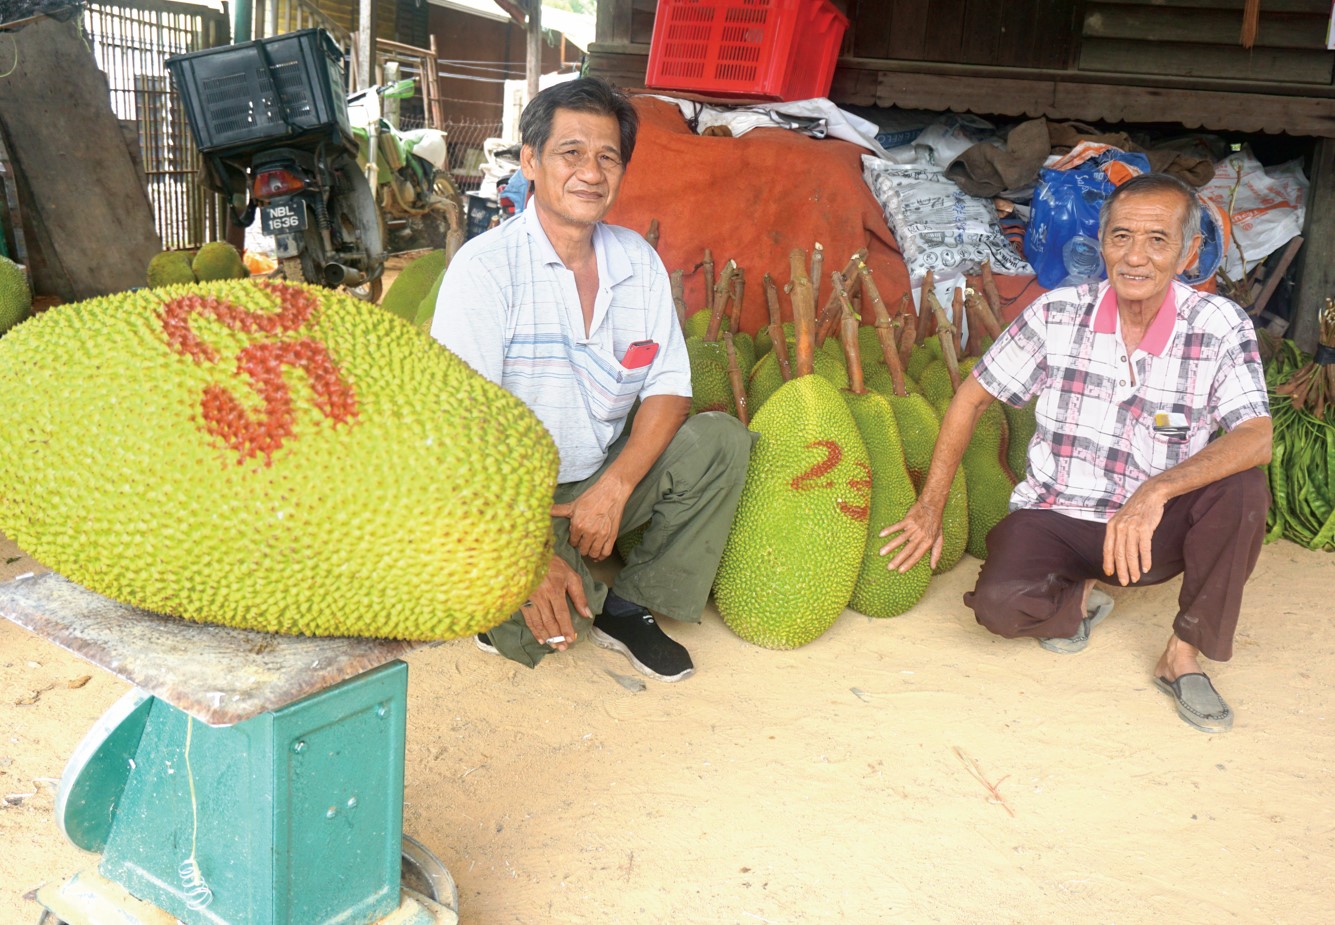 文丁大颗粒J32菠萝蜜 长期外销香港市场 - 农牧世界